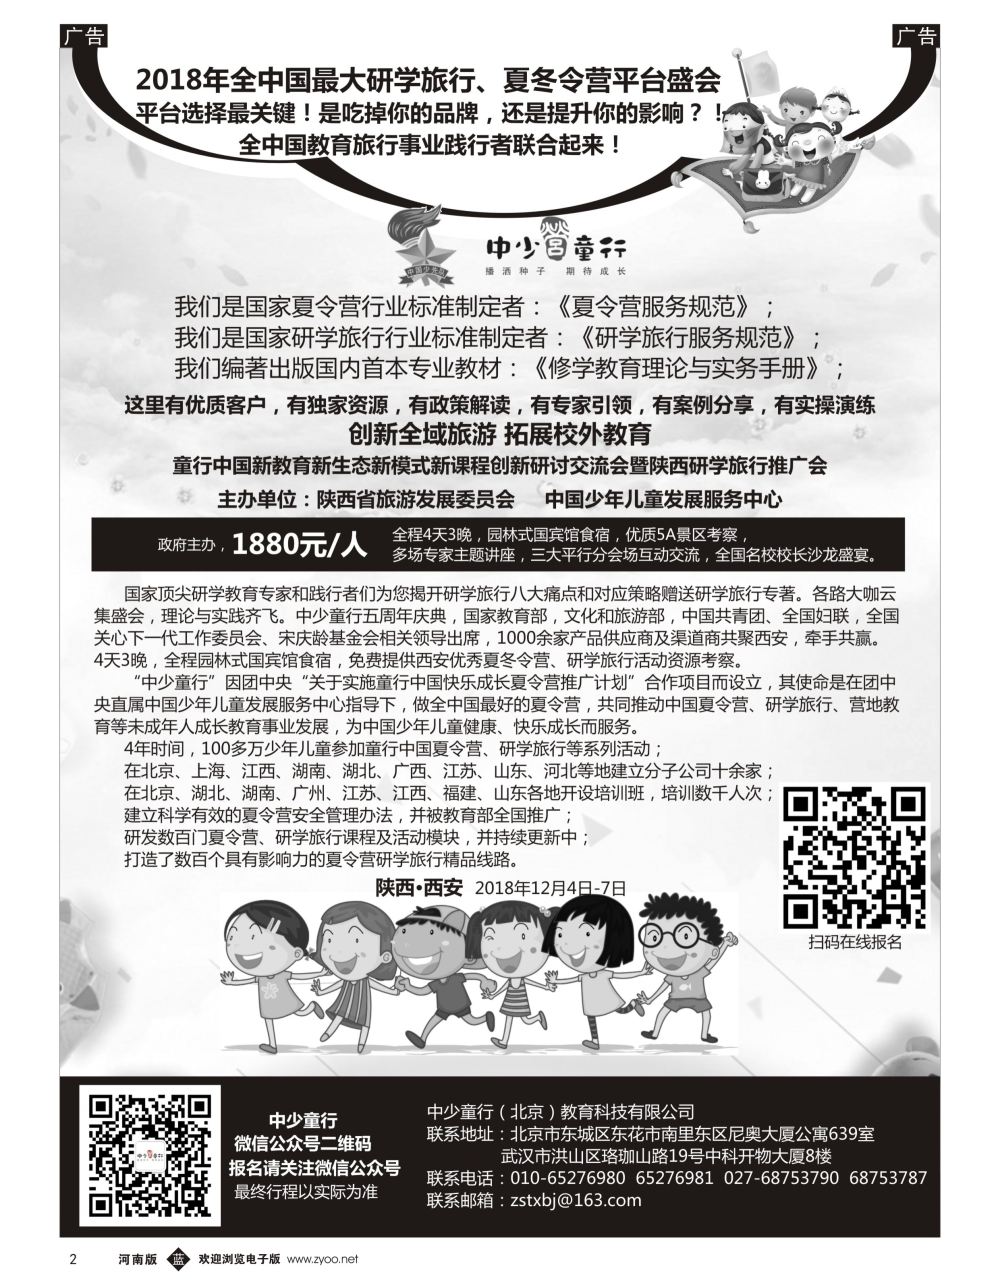 b黑002    童行中国夏令营推广计划2018年夏令营、研学旅行活动推介会